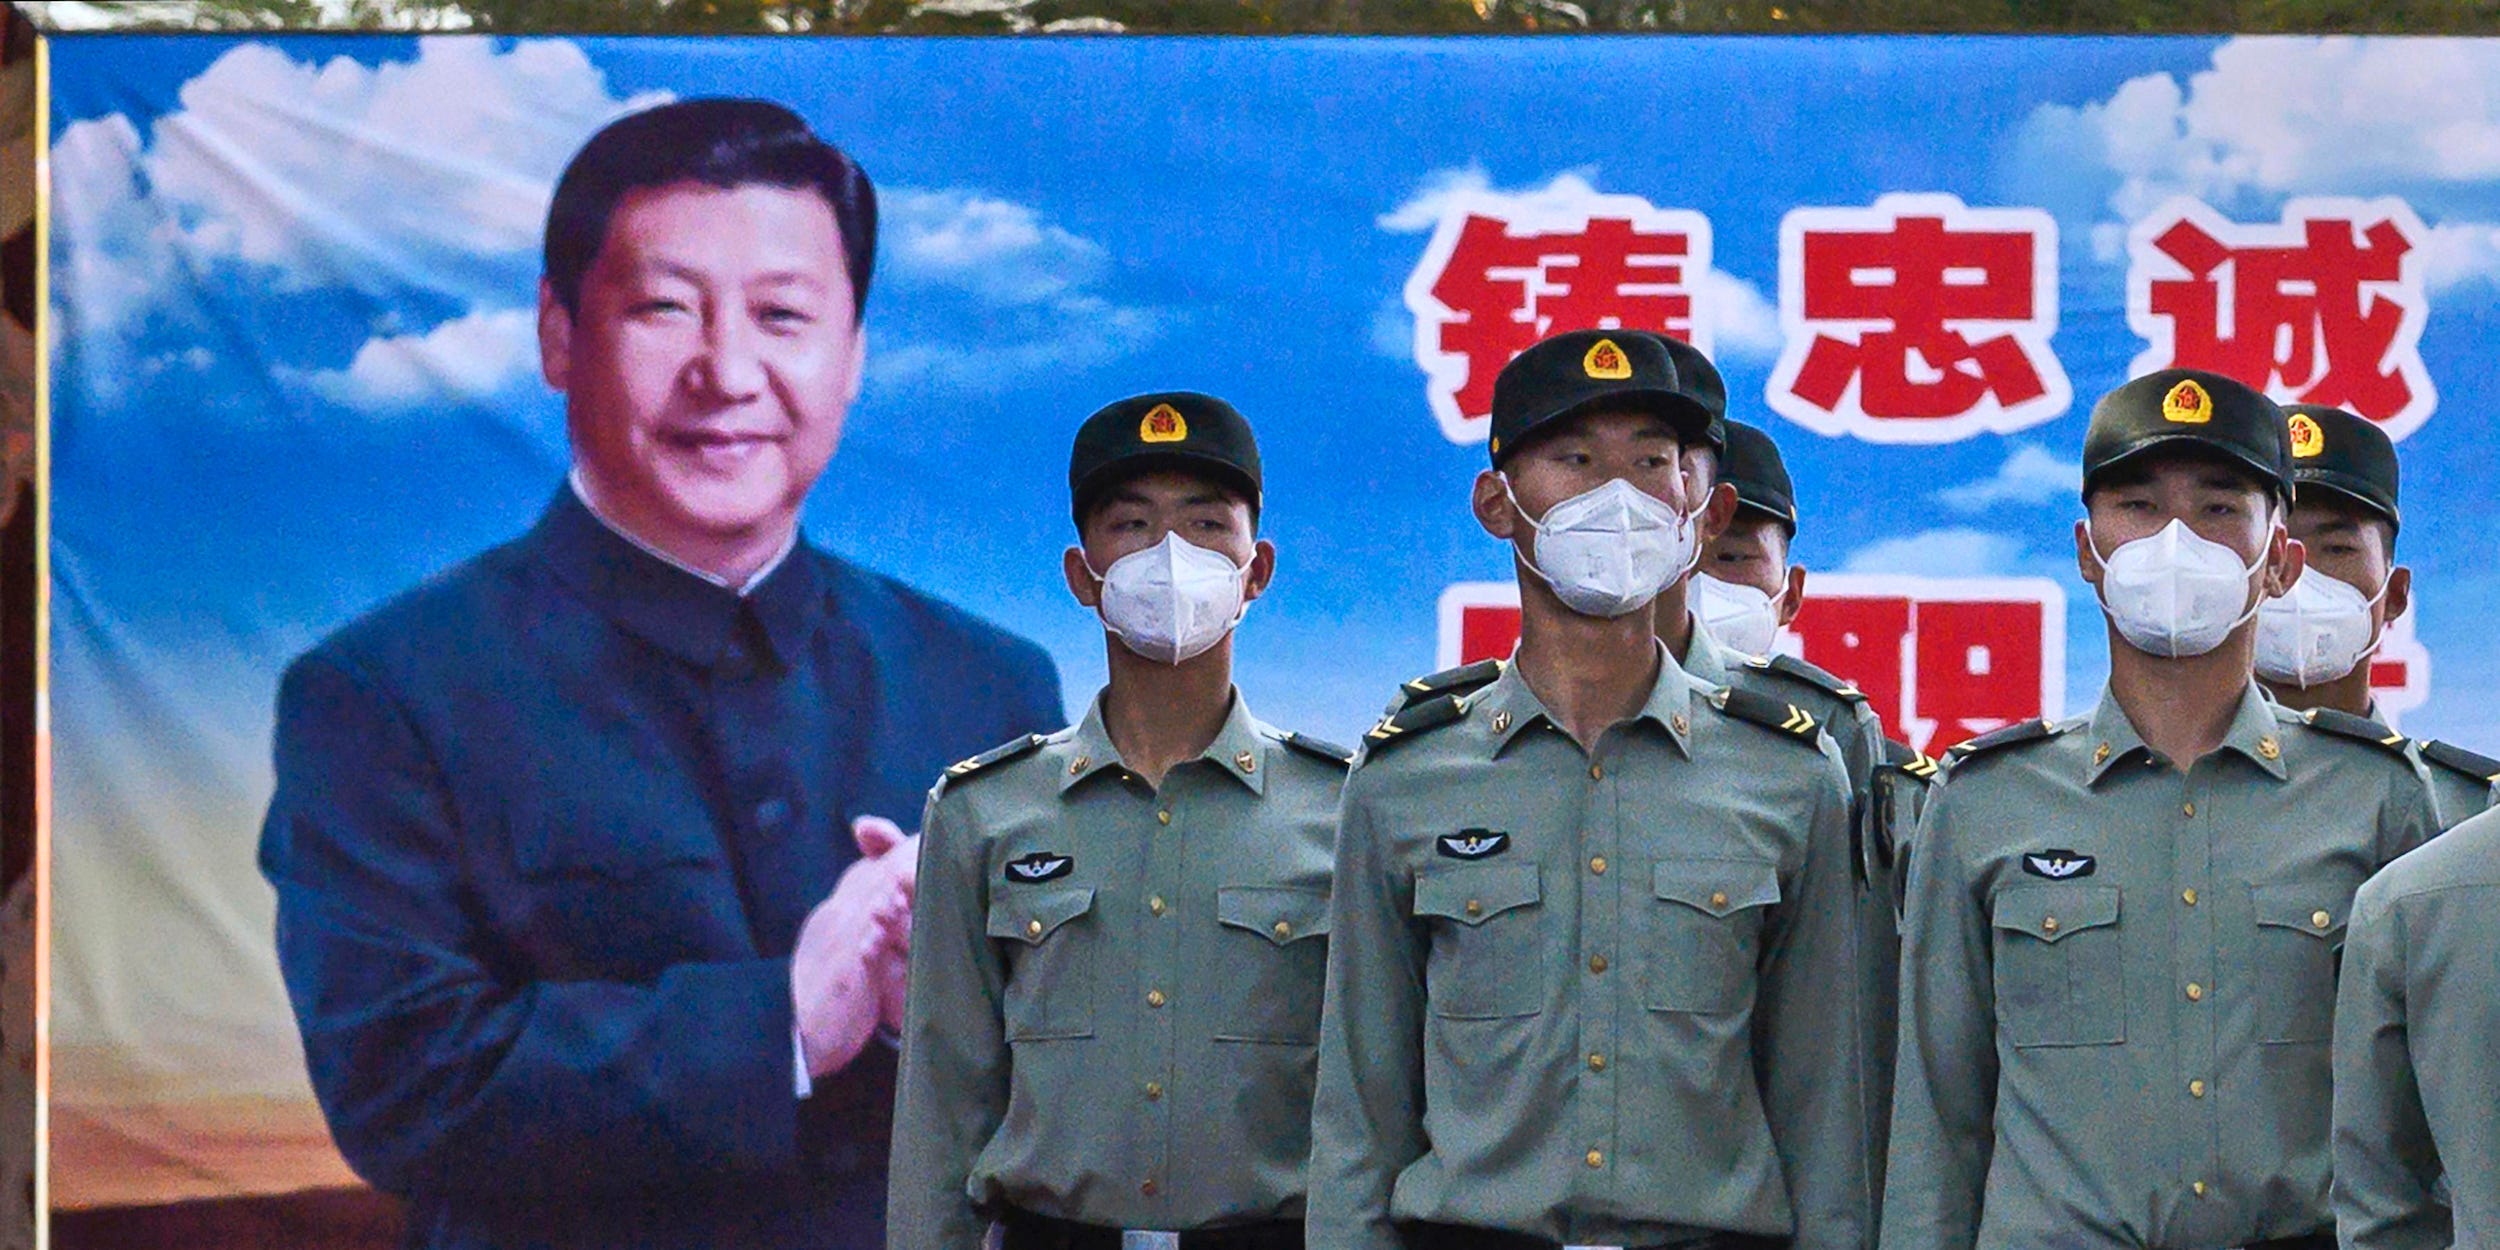 China soldiers Xi Jinping Beijing